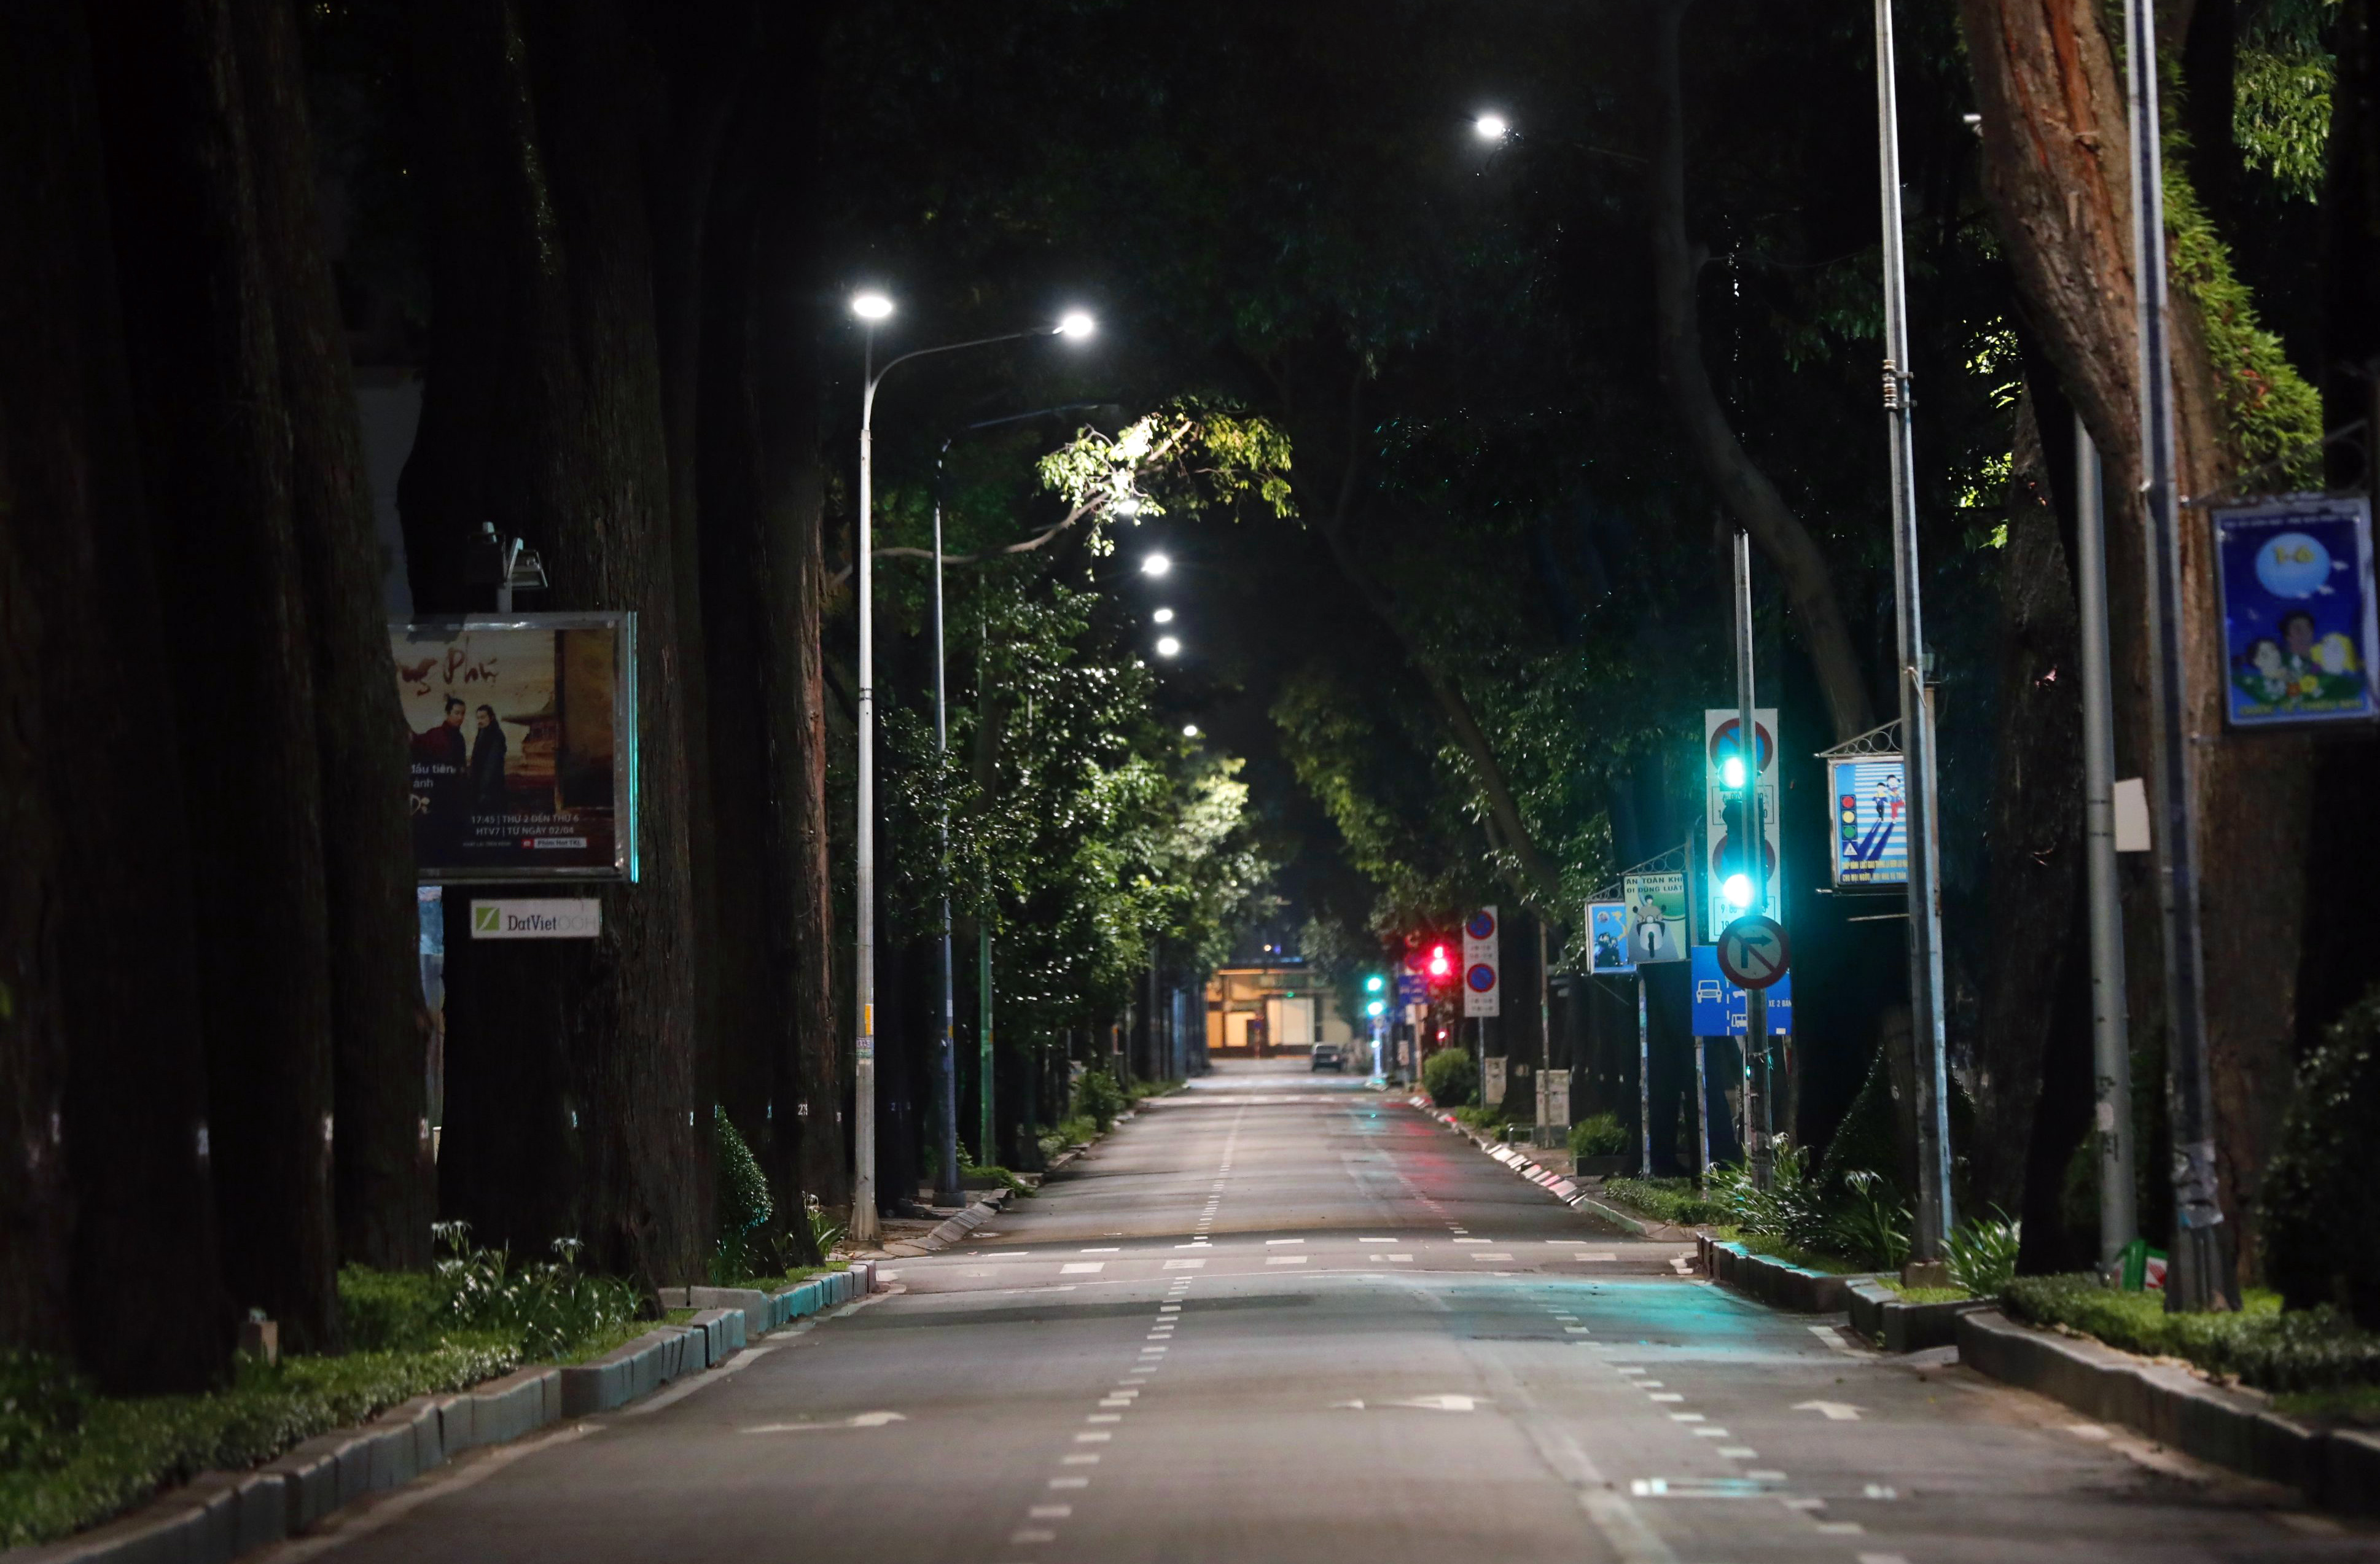 Tối nay TP.HCM trở nên vắng lặng, tạo ra một vẻ đẹp riêng biệt của thành phố sôi động này. Đến xem những bức ảnh tuyệt đẹp của những con đường đang phủ một màu ánh đèn đêm để cảm nhận được sự đặc biệt này nhé!